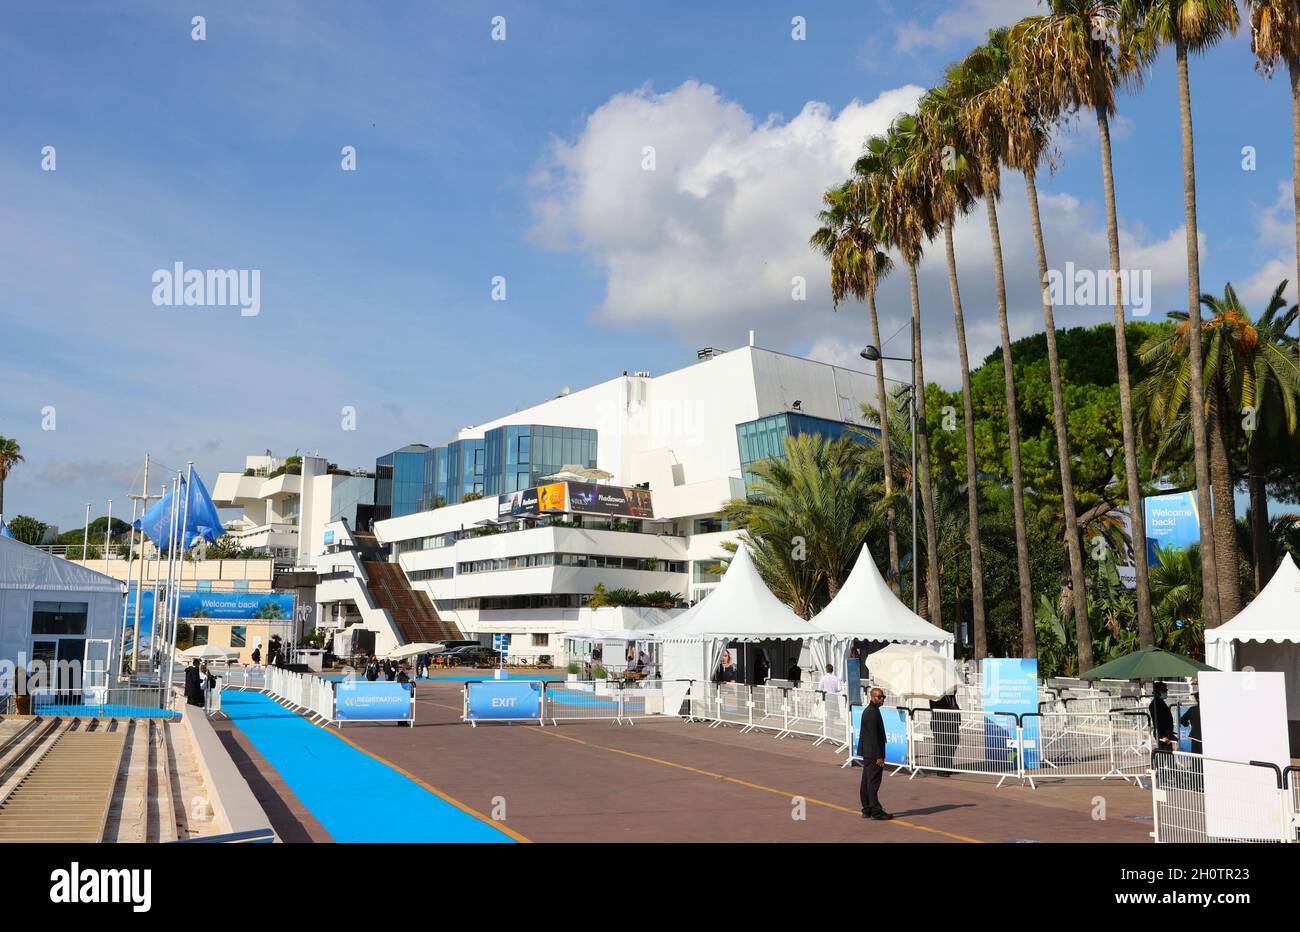 Cannes, Frankreich - 13. Oktober 2021: MIPCOM/MIPJUNIOR - der weltweite Markt für Unterhaltungsinhalte und das weltweit führende Event der Unterhaltungsindustrie für Kinder mit Atmosphäre im Palais des Festivals. RX Frankreich, Fernsehmesse, TV. Mandoga Media Ger Stockfoto